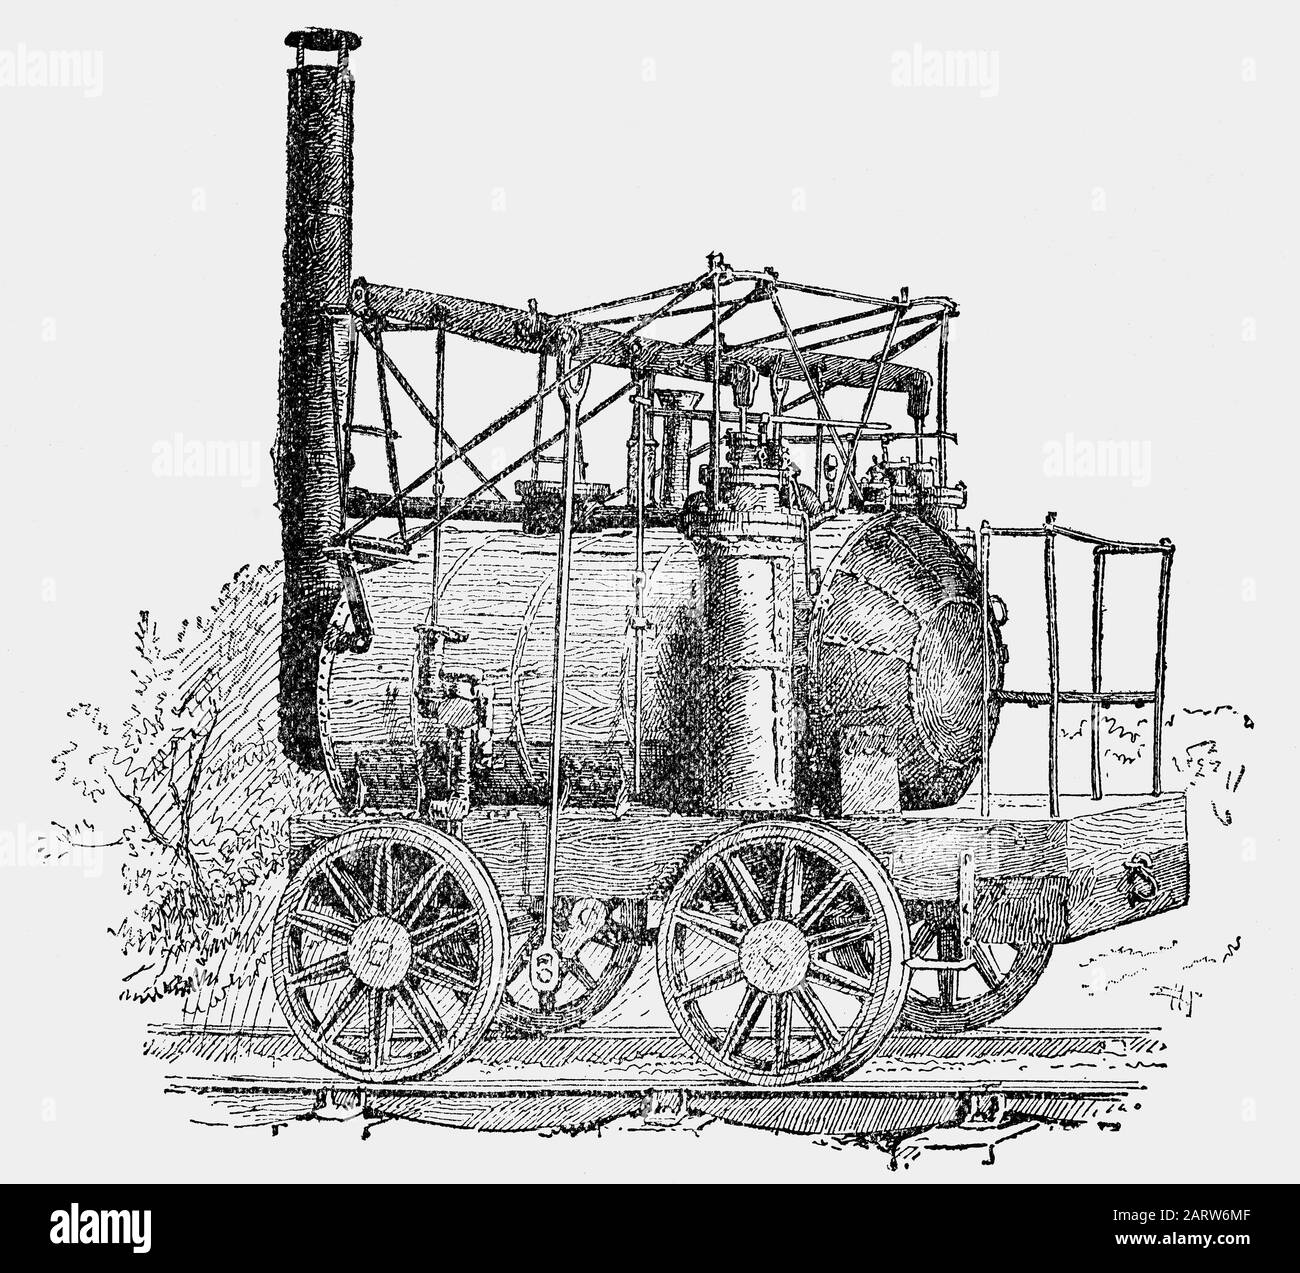 La locomotive à vapeur « Puffing Billy », construite en 1814 par le spectateur de charbon William Hedley, enginewright Jonathan Forster et forgeron Timothy Hackworth pour Christopher Blackett, propriétaire de la mine de charbon Wylam près de Newcastle upon Tyne, au Royaume-Uni. Il s'agissait de la première locomotive à vapeur à adhérence commerciale, utilisée pour transporter des wagons de chaldron de charbon de la mine de Wylam aux quais de Lemington-on-Tyne, dans le Northumberland. Banque D'Images